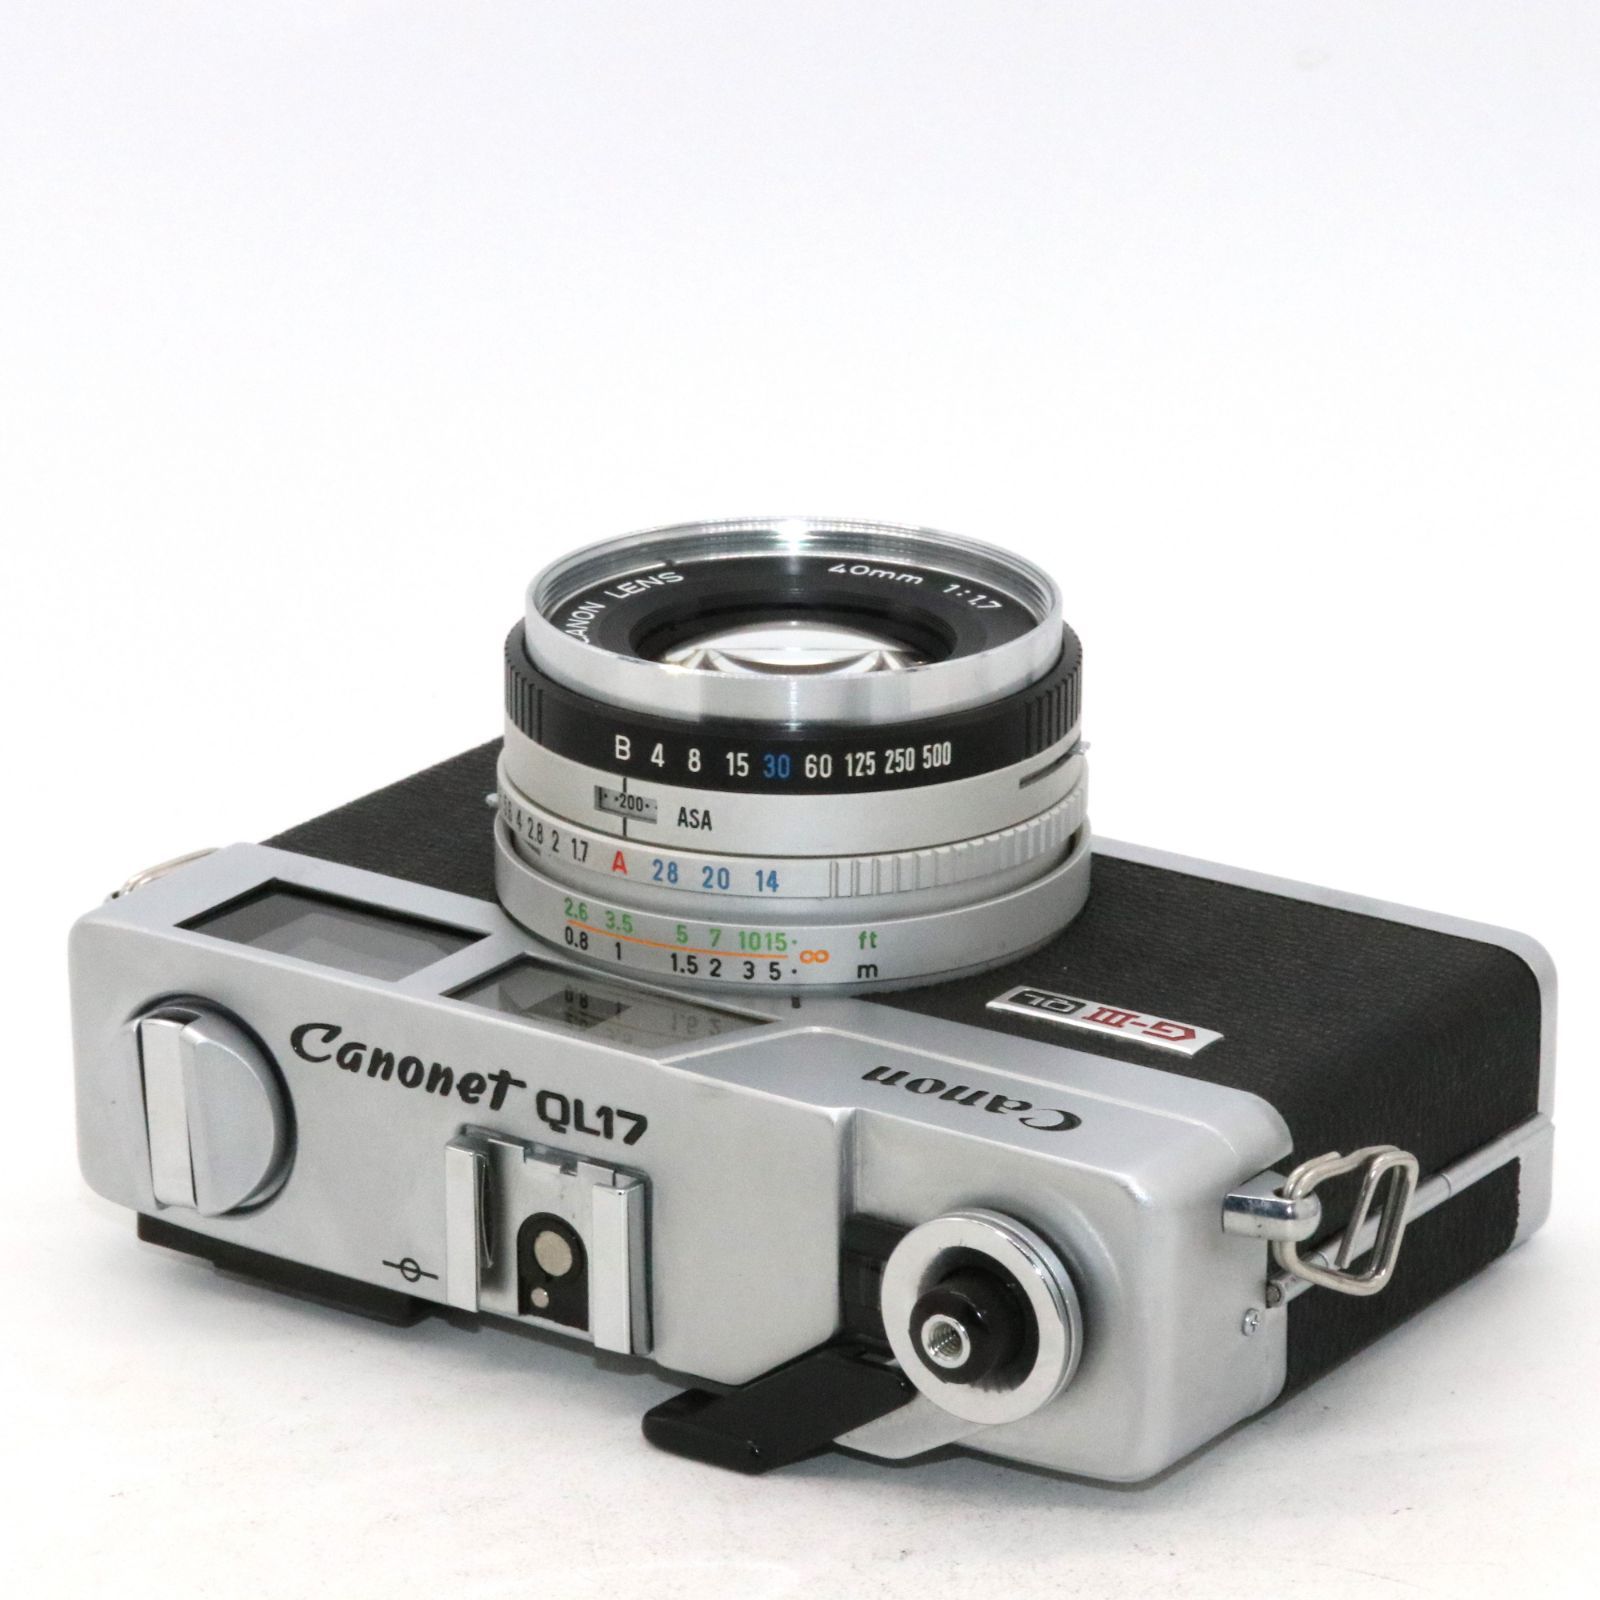 露出計 動作 【 並品 】 キャノン CANON Canonet QL17 G-III フィルム